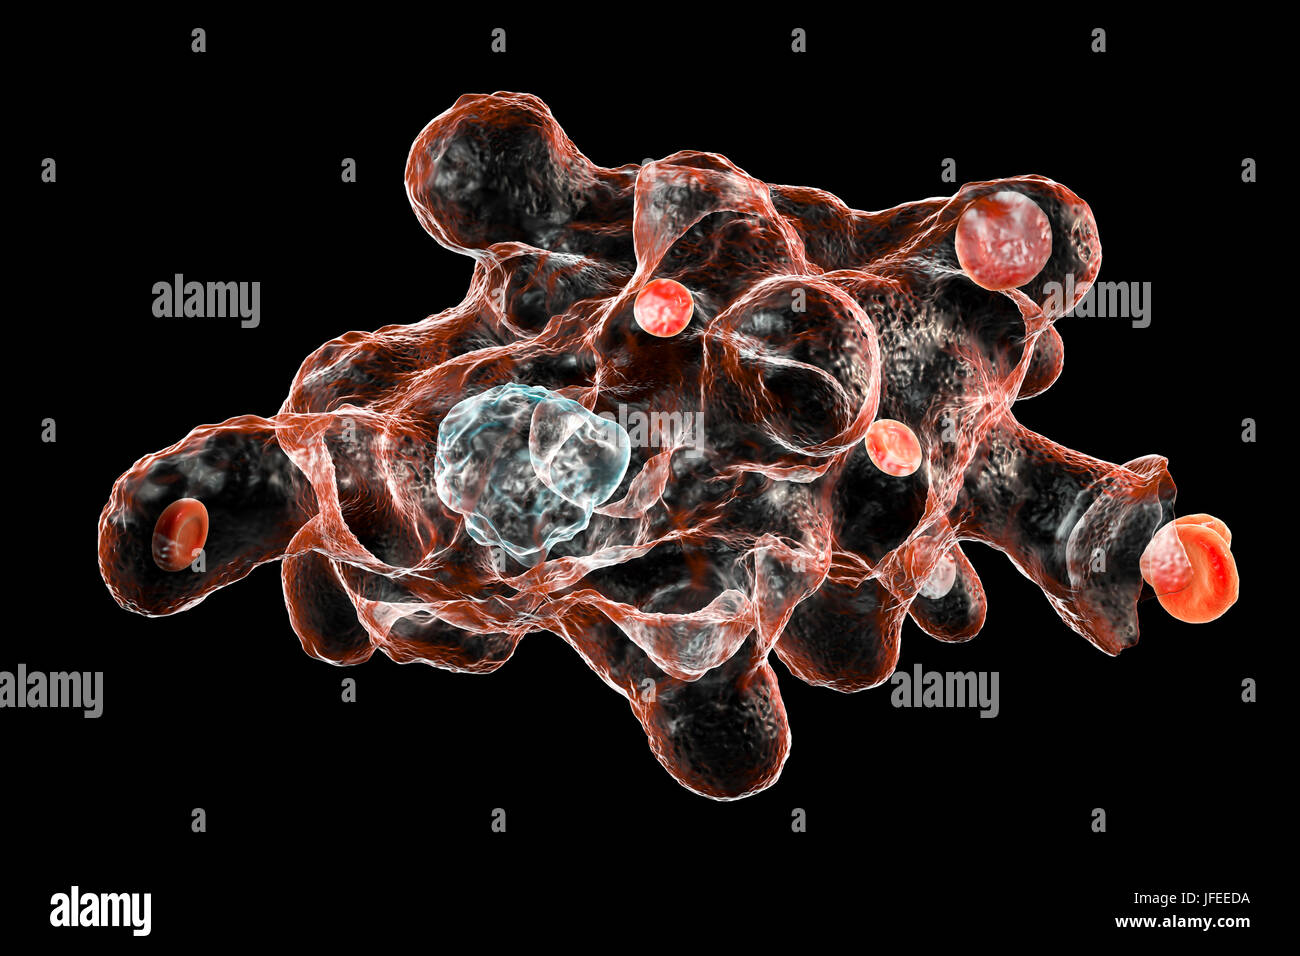 Amibe parasitaire (Entamoeba histolytica) qui envahit les globules rouges, l'illustration de l'ordinateur. Cet organisme unicellulaire la dysenterie amibienne et ulcères (stade végétatif) trophozoïte. Il se transmet par contamination fécale des aliments et de l'eau et est plus commun où l'assainissement est pauvre. Les amibes envahissent l'intestin mais peut se répandre sur le foie, les poumons et d'autres tissus. L'infection est provoquée par l'ingestion de kystes qui se développent dans l'amibe trophozoïte pathogènes vus ici. Entamoeba histolytica est présente dans le monde entier, avec jusqu'à 50 % de la population infectée principalement dans les climats chauds. Banque D'Images